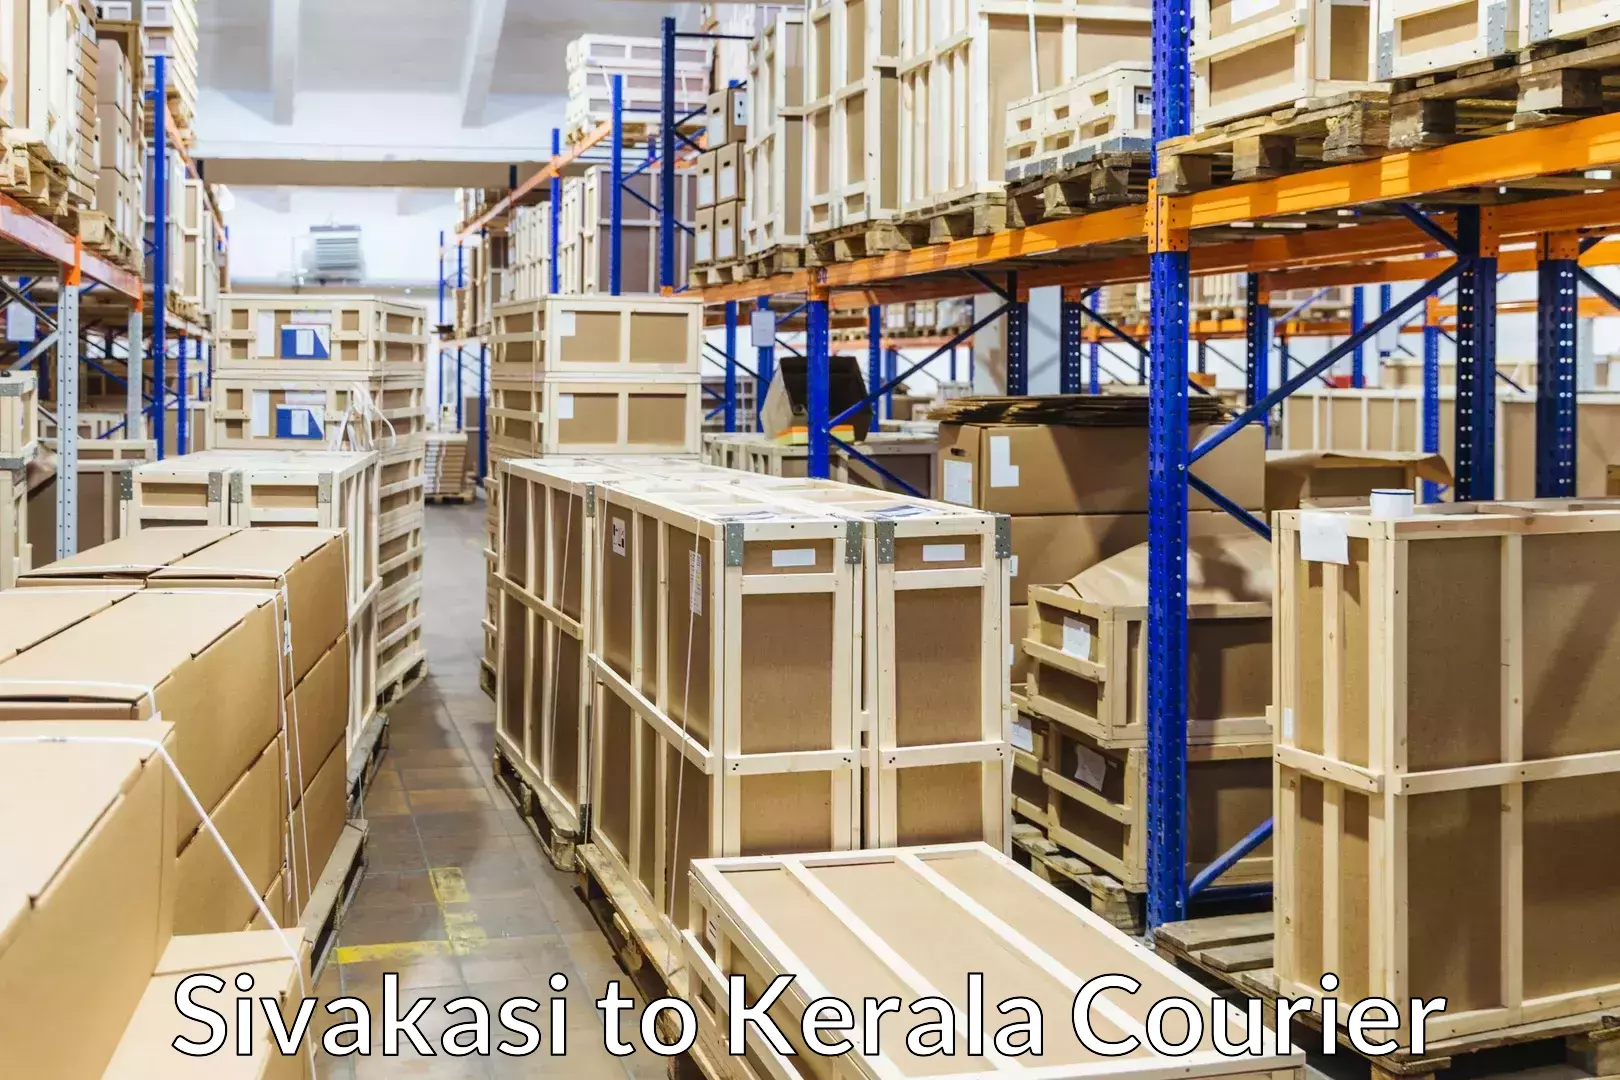 Furniture moving services Sivakasi to Kerala